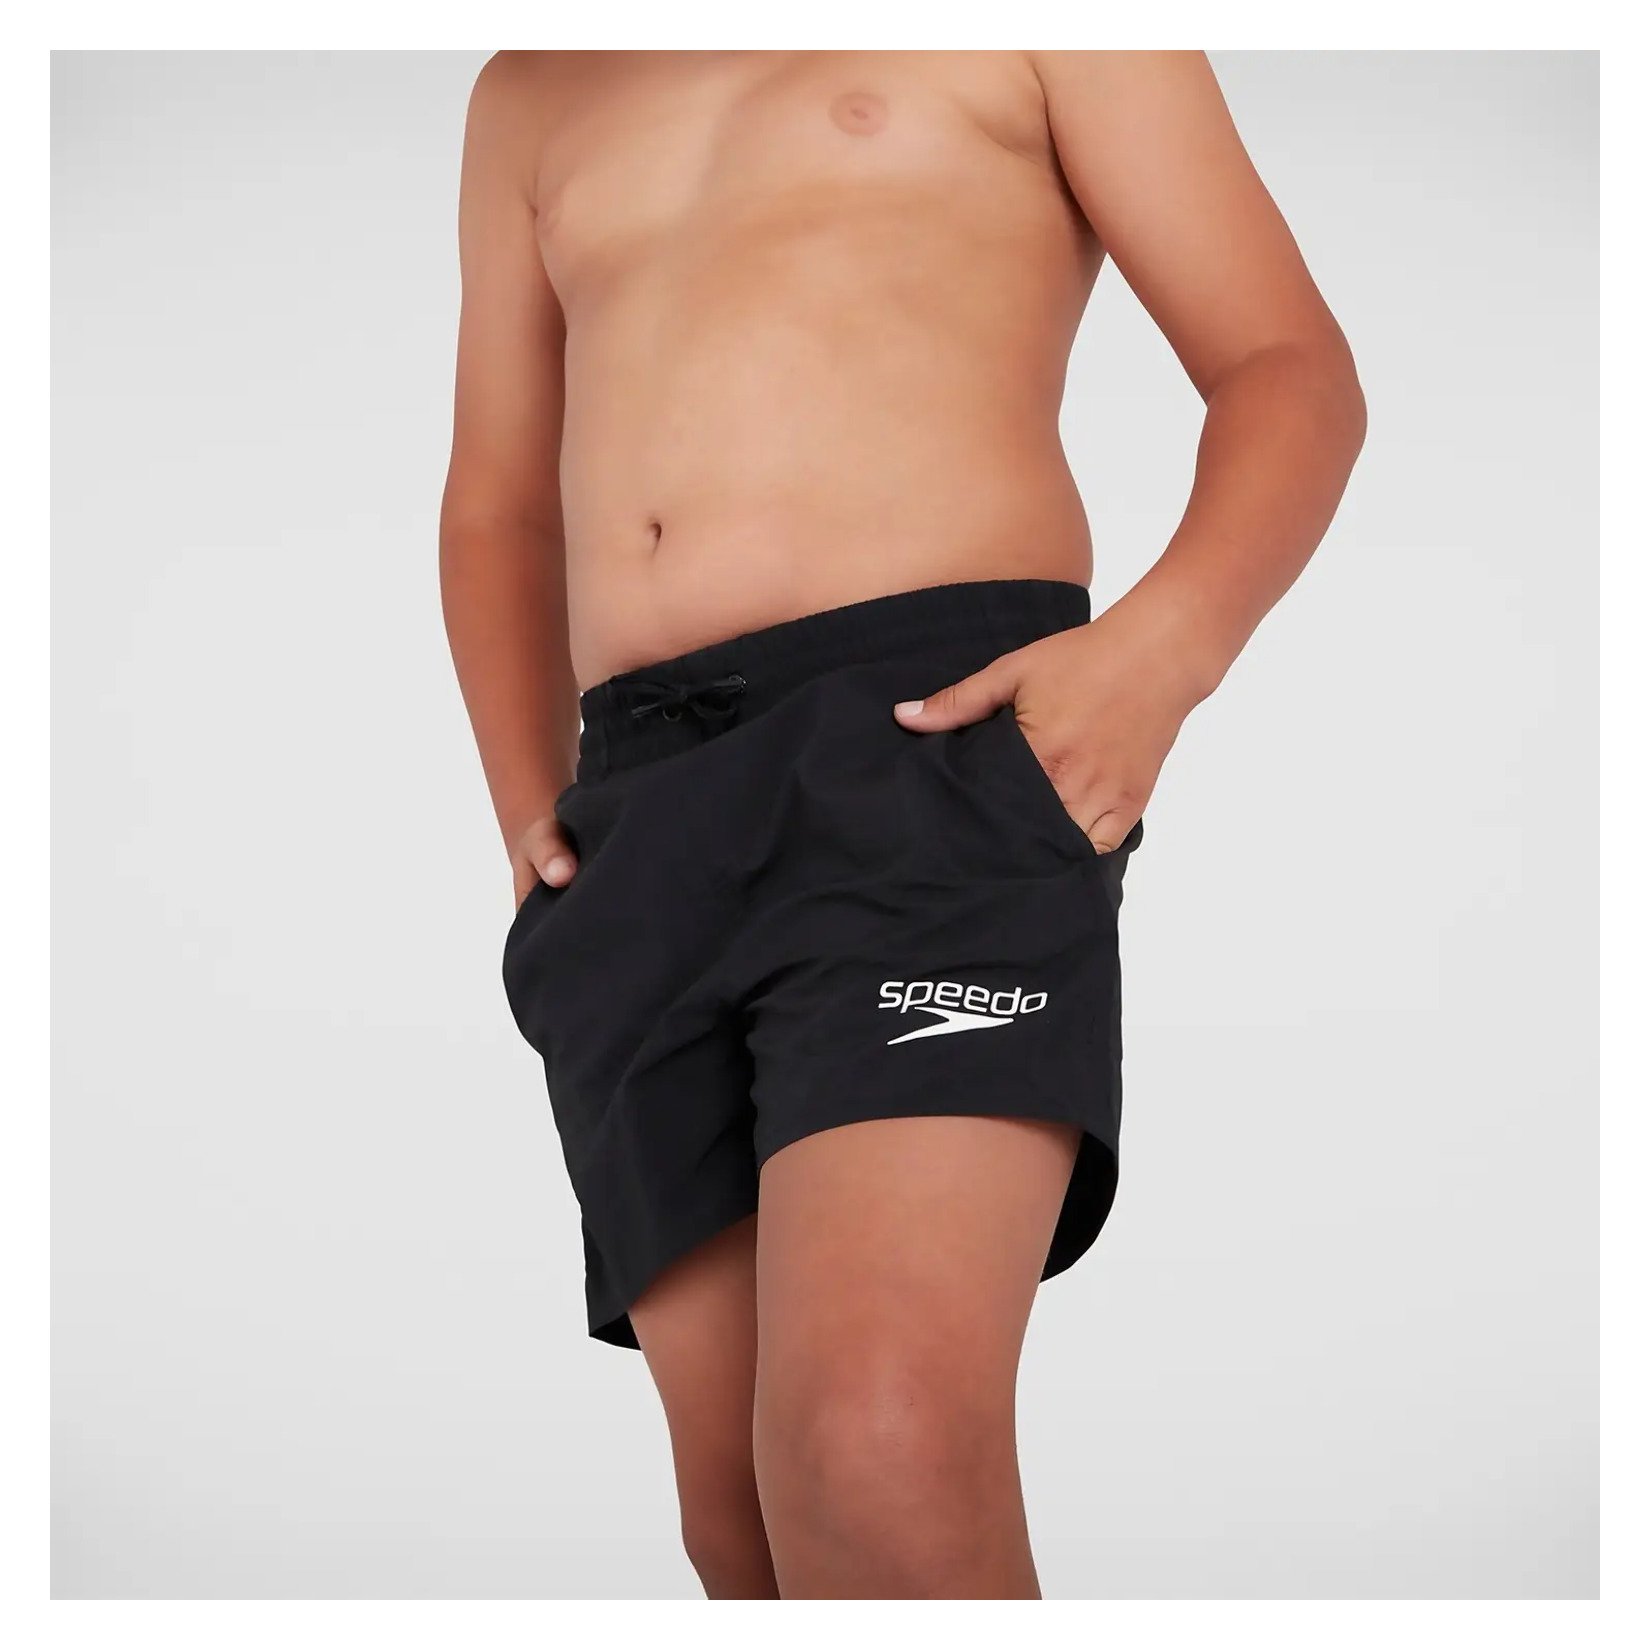 Speedo Junior Essential 13 Inch Water shorts